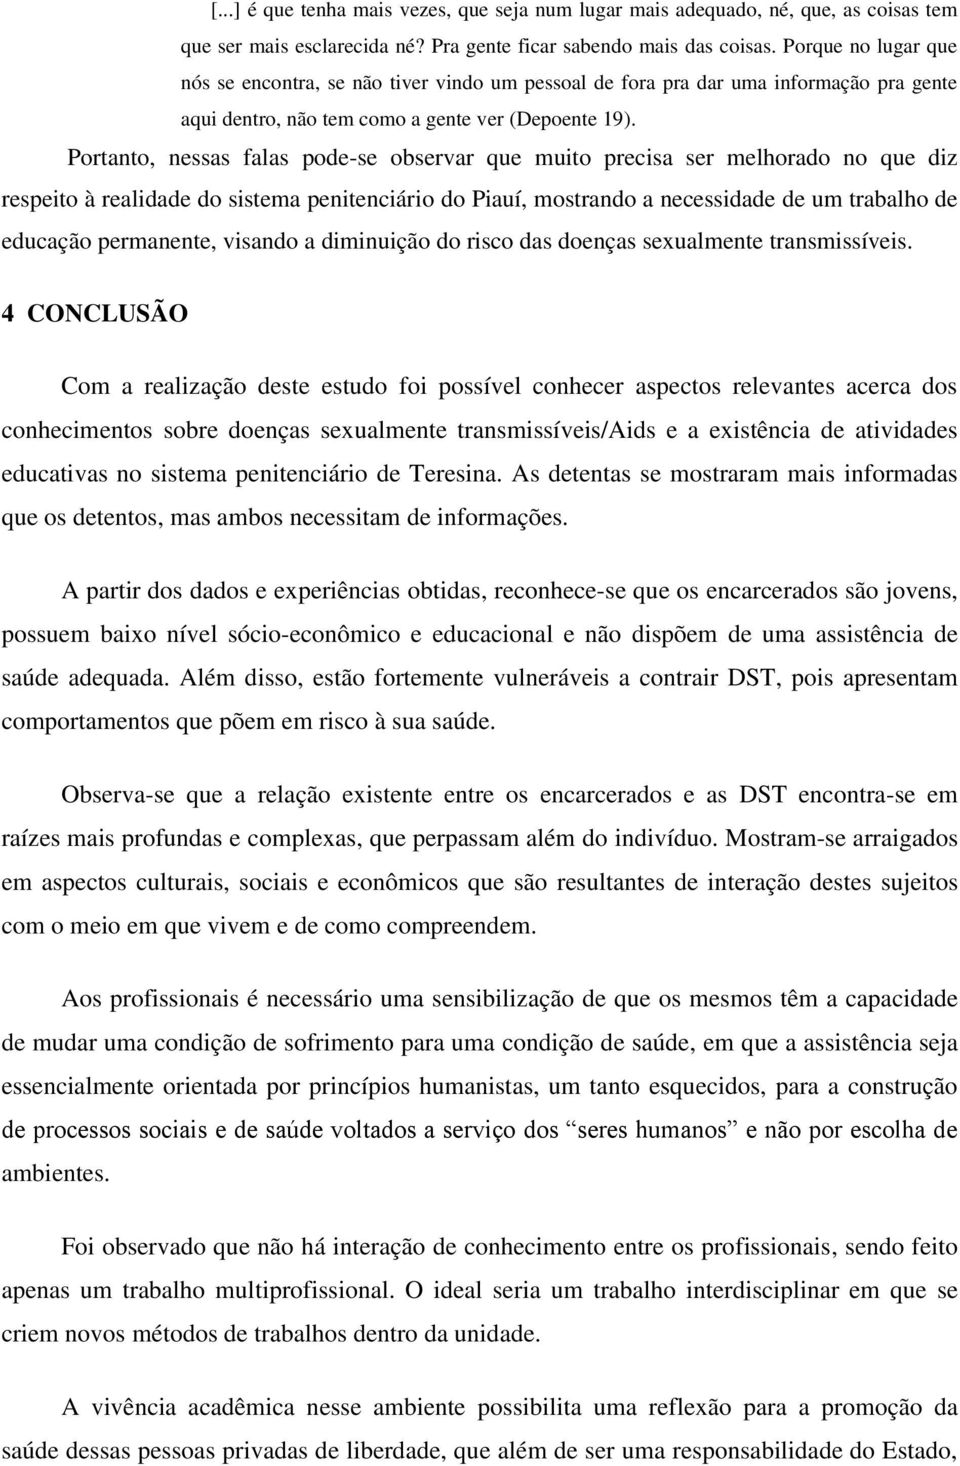 Portanto, nessas falas pode-se observar que muito precisa ser melhorado no que diz respeito à realidade do sistema penitenciário do Piauí, mostrando a necessidade de um trabalho de educação